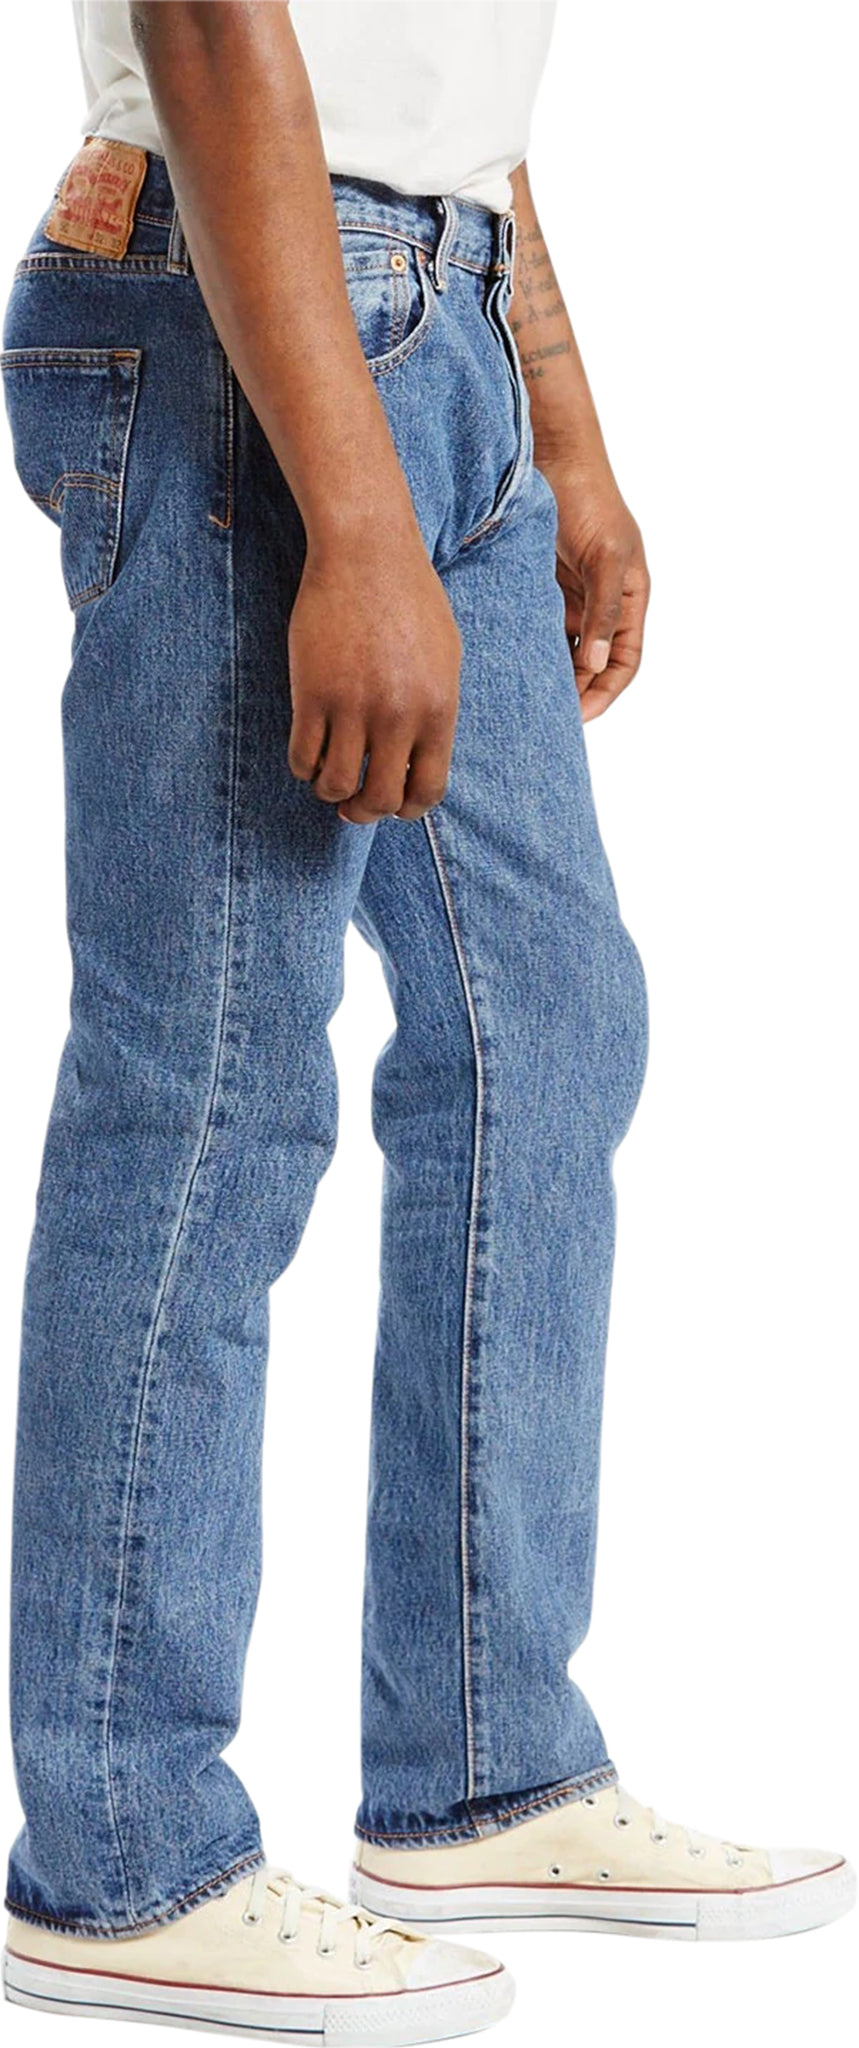 Levi's 501 Original Fit Jeans - Men's | Altitude Sports